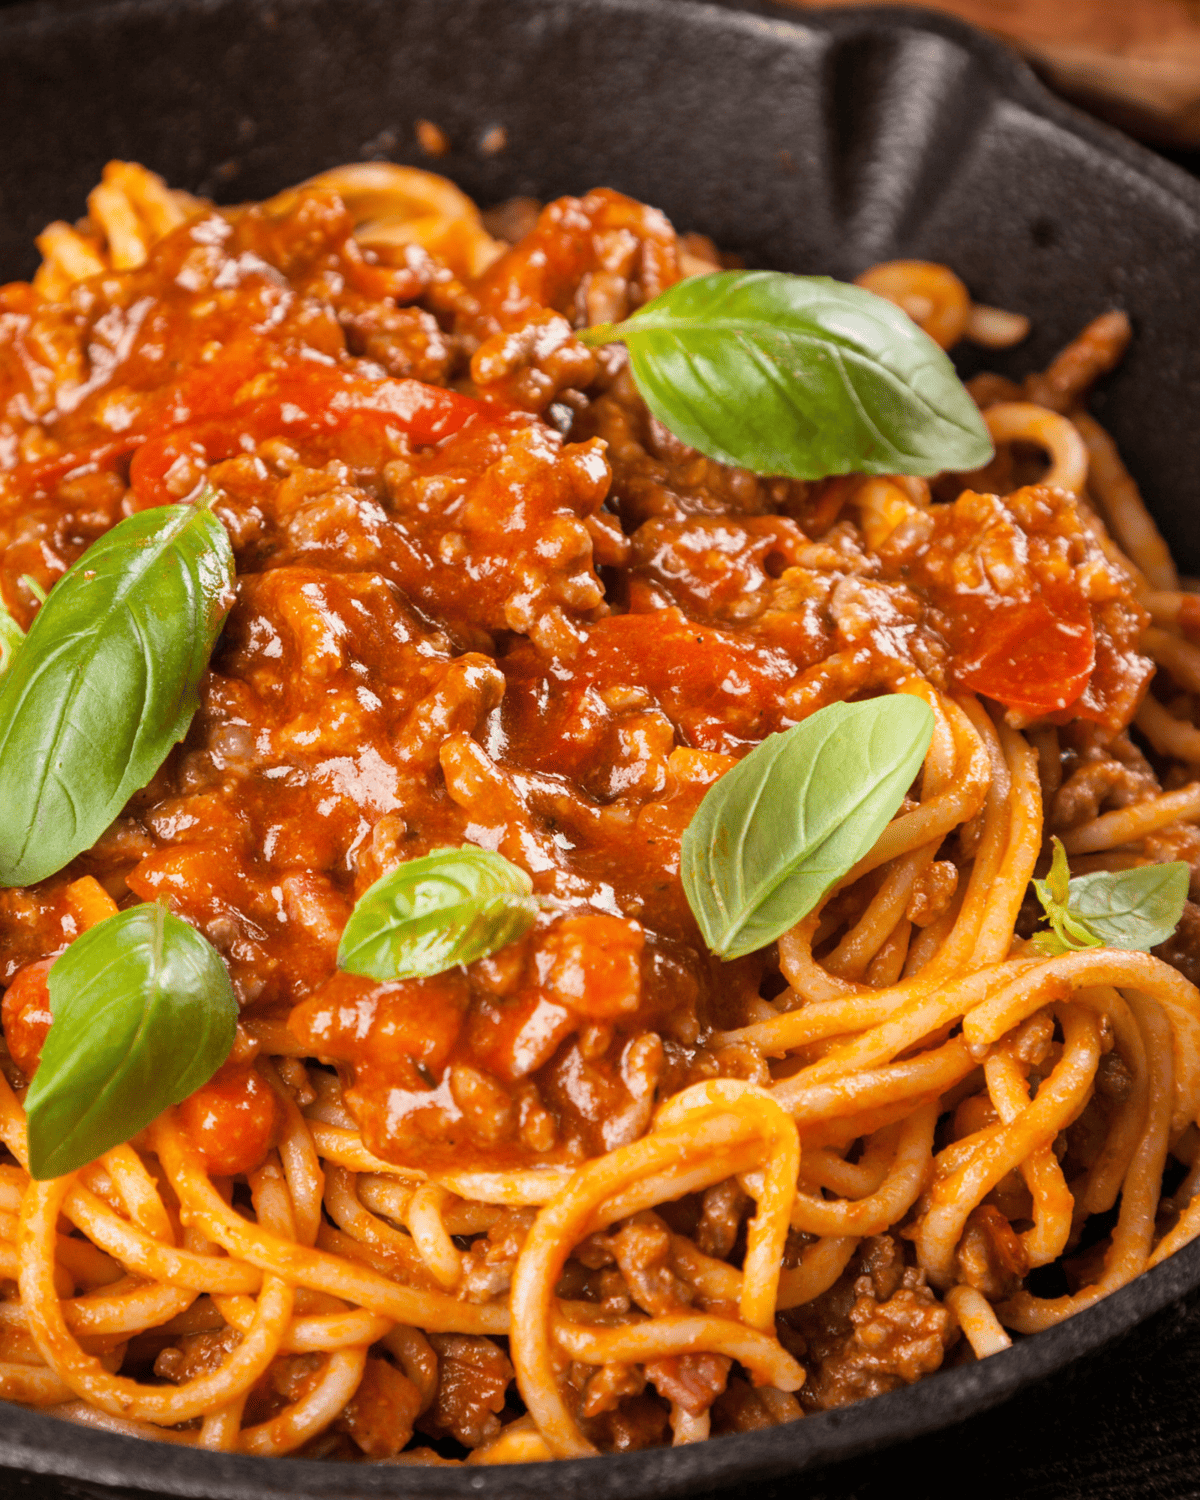 spaghetti and meat sauce plus basil ina  closeup.